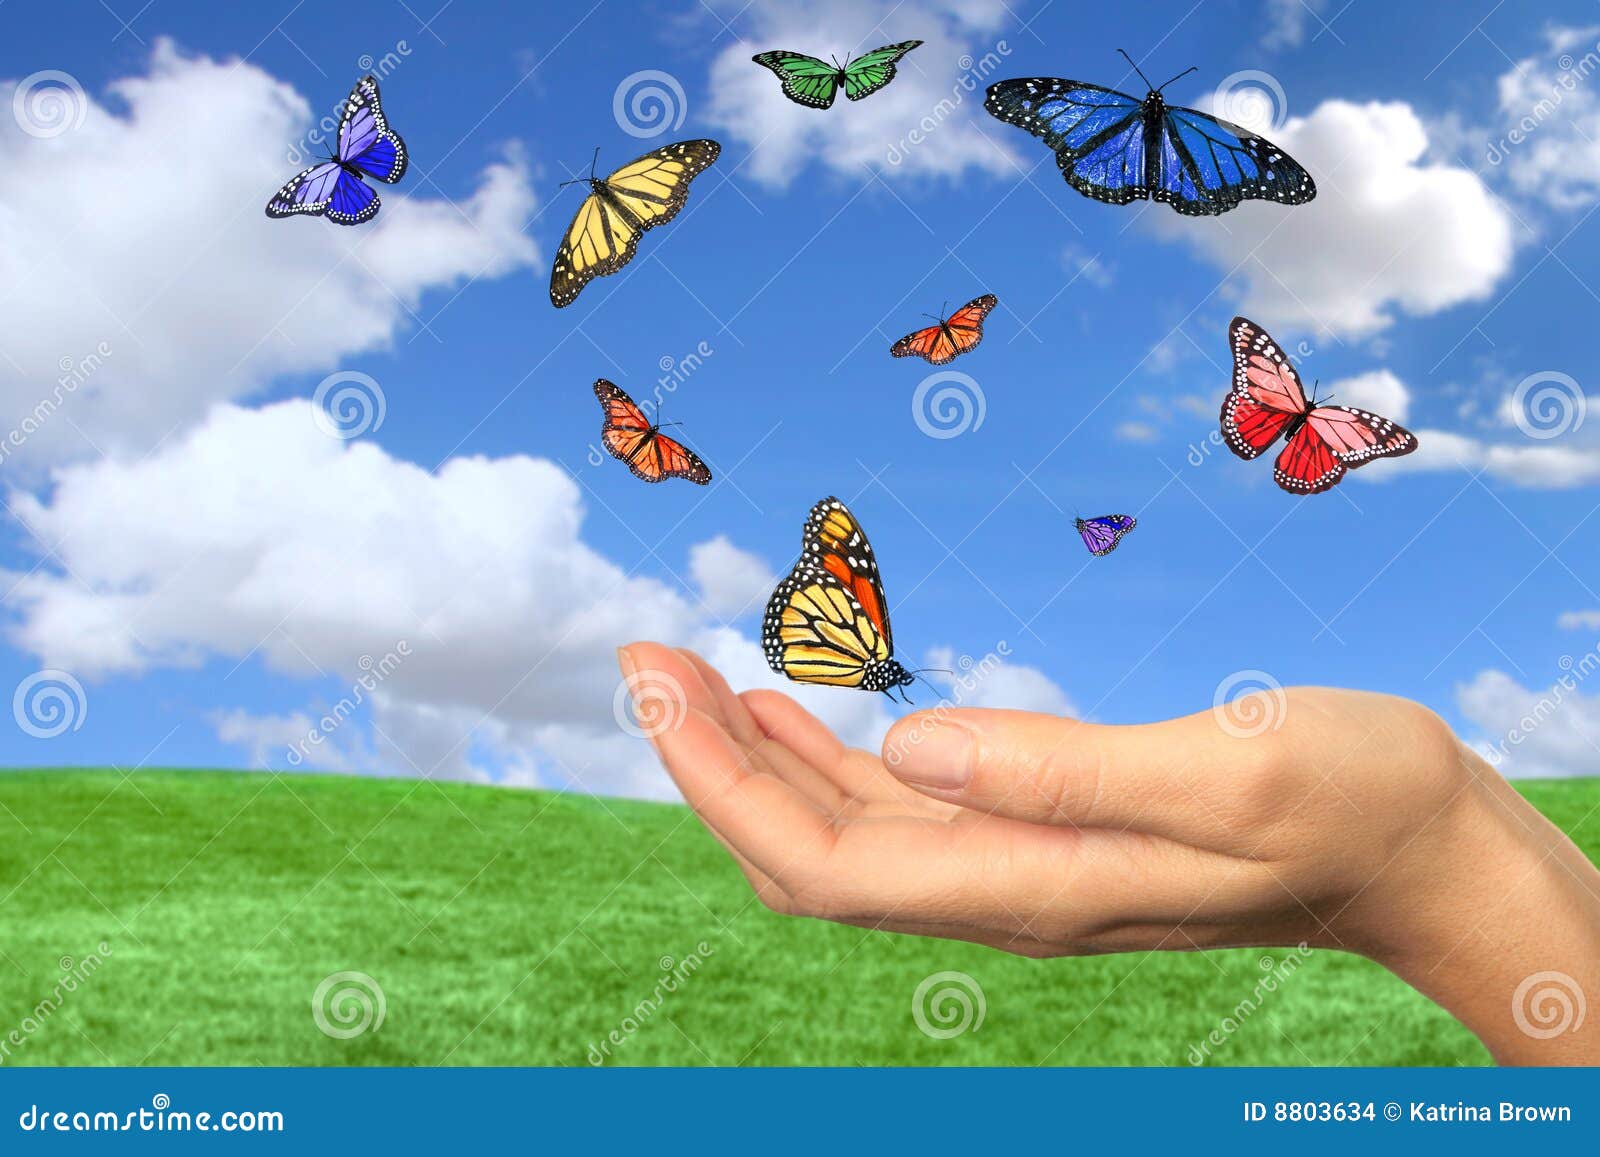 Spiksplinternieuw Het Mooie Vrij Vliegen Van Vlinders Stock Foto - Afbeelding IR-04